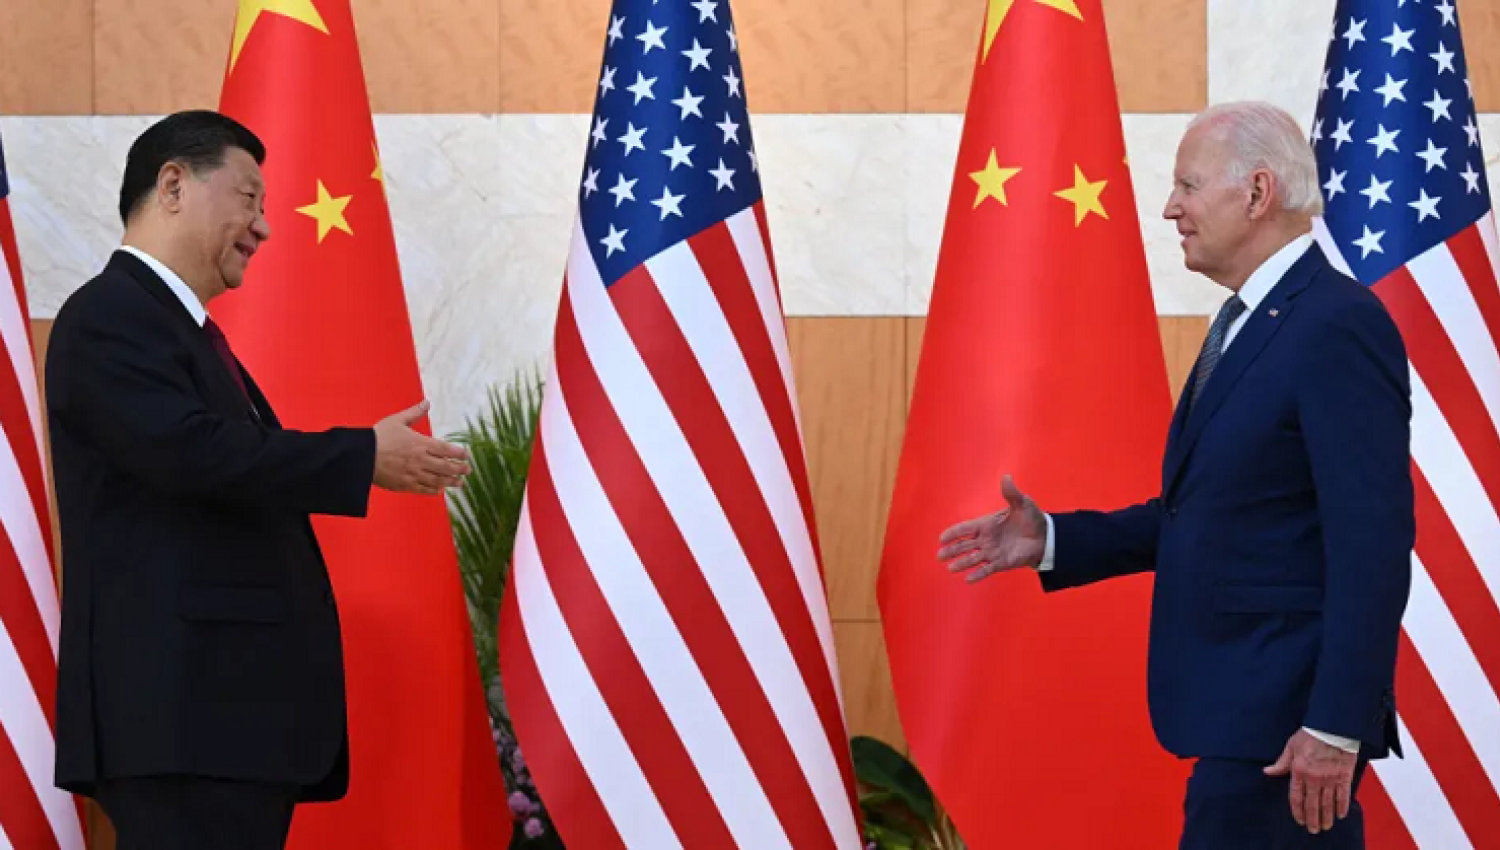 وزير الخزانة السابق: عن مخاطر الانفصال بين أمريكا والصين